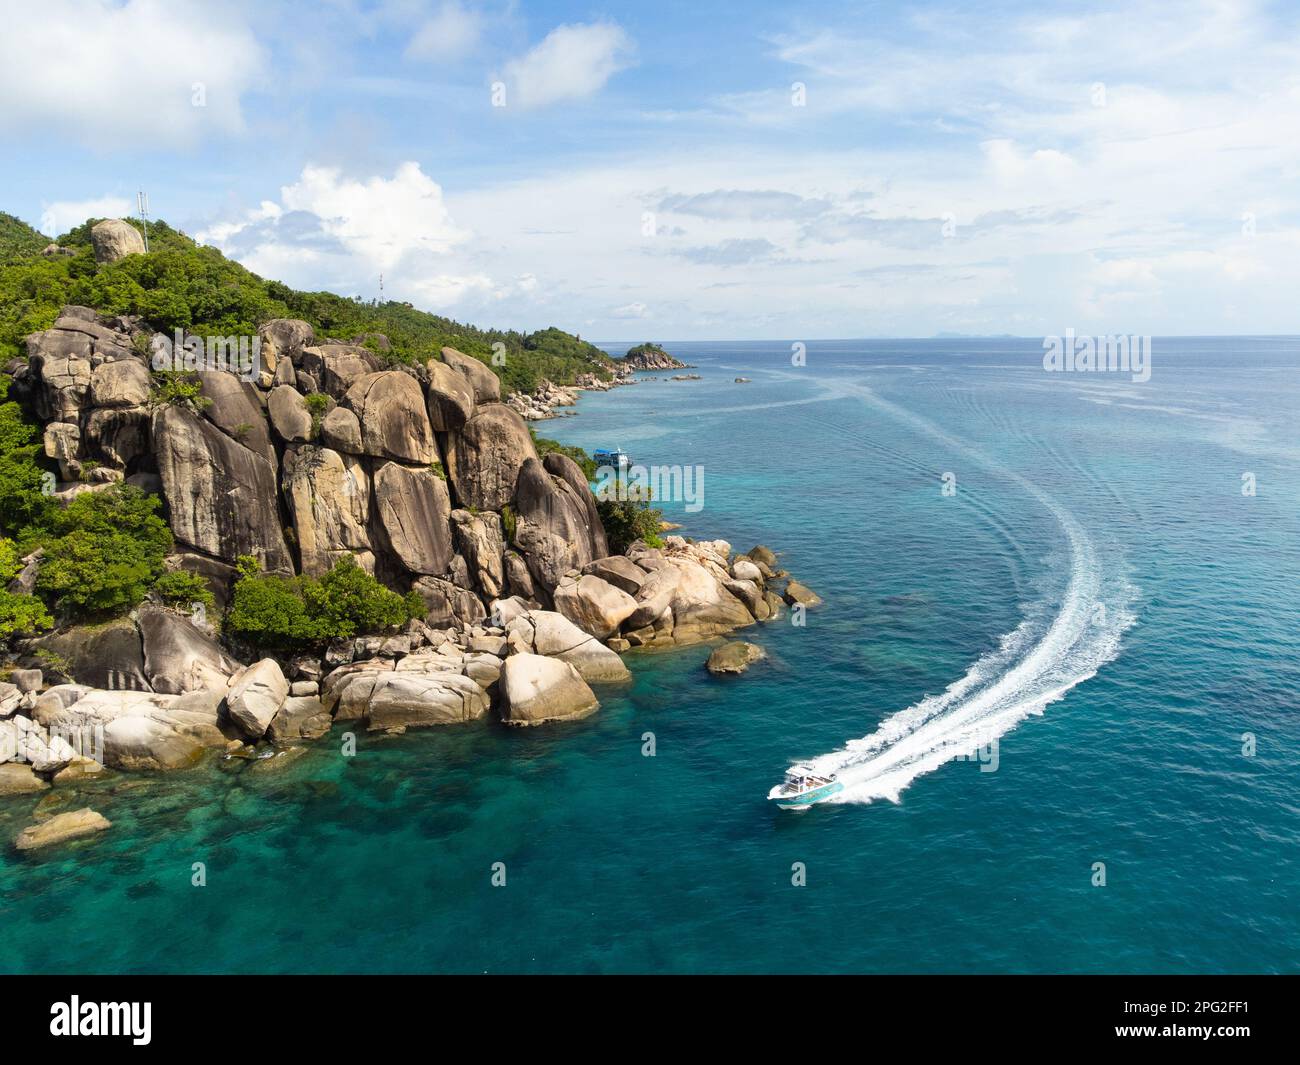 Ko Tao, Thailand: Luftaufnahme der Insel Ko Tao im Golf von Thailand in Südostasien. Die Insel ist ein berühmtes Tauchziel. Stockfoto